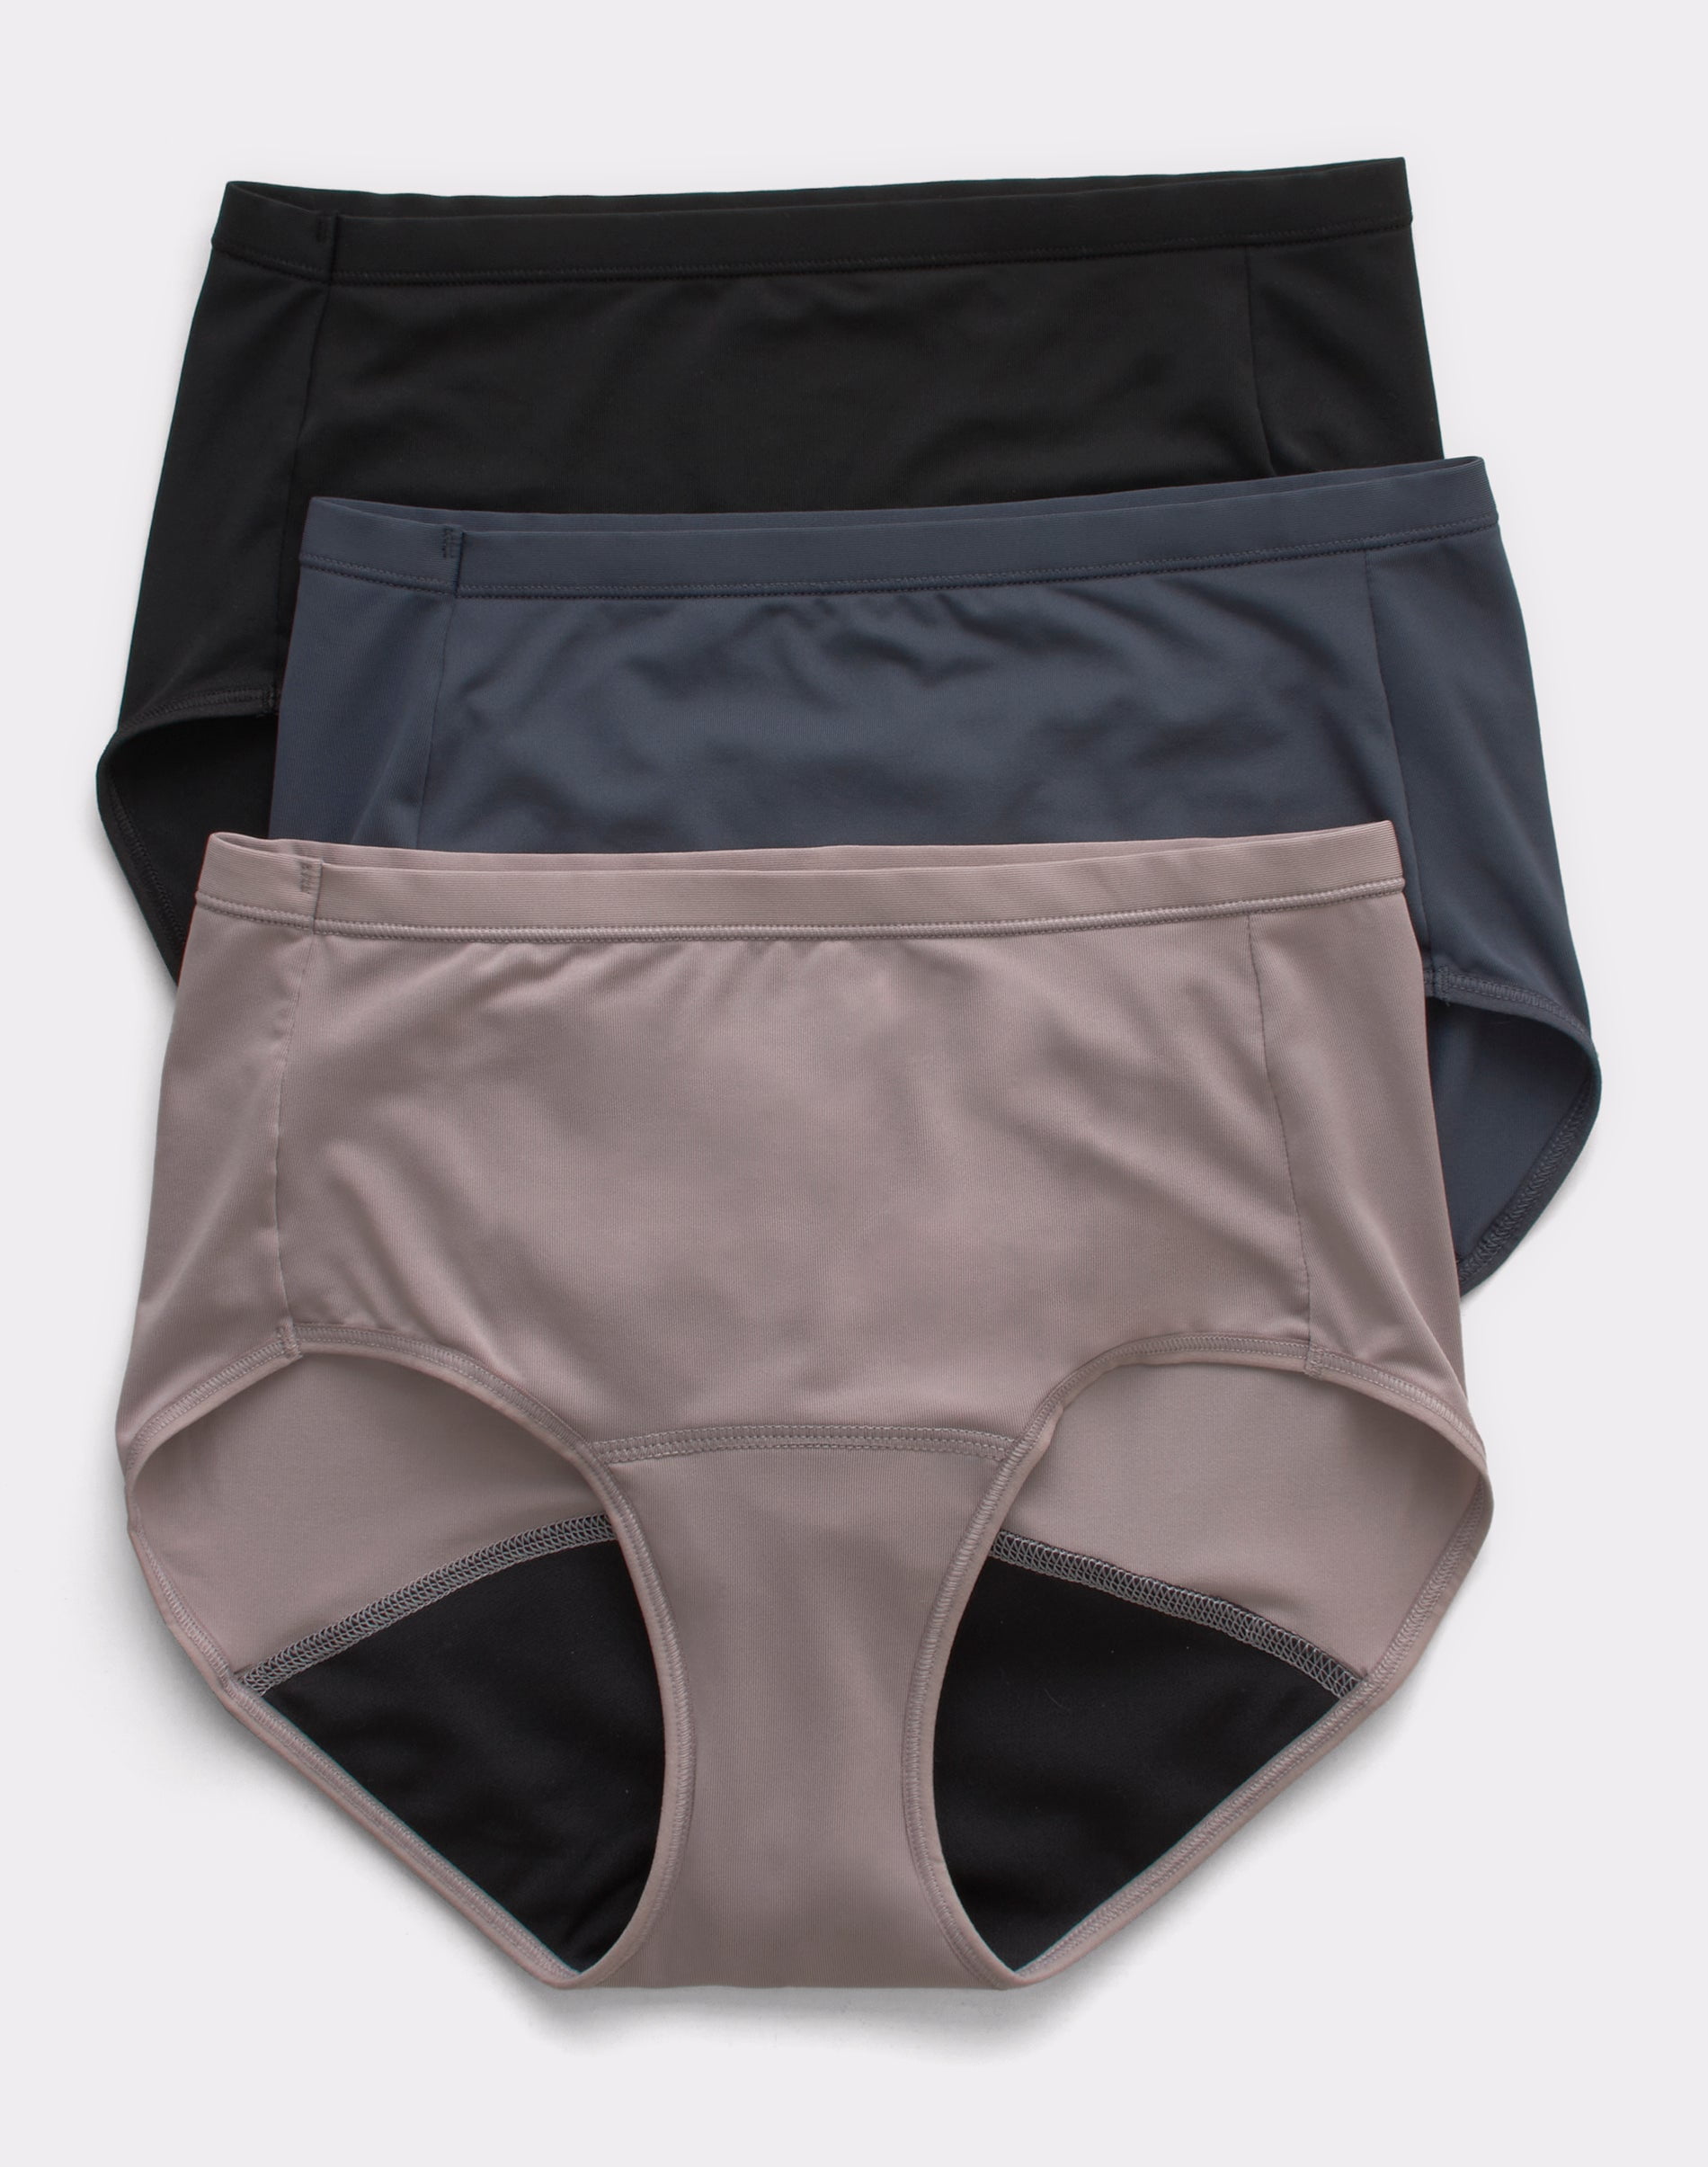 Hanes Comfort, Period. Women's Brief Underwear, Light Leaks, Neutrals,  3-Pack Assorted 7 